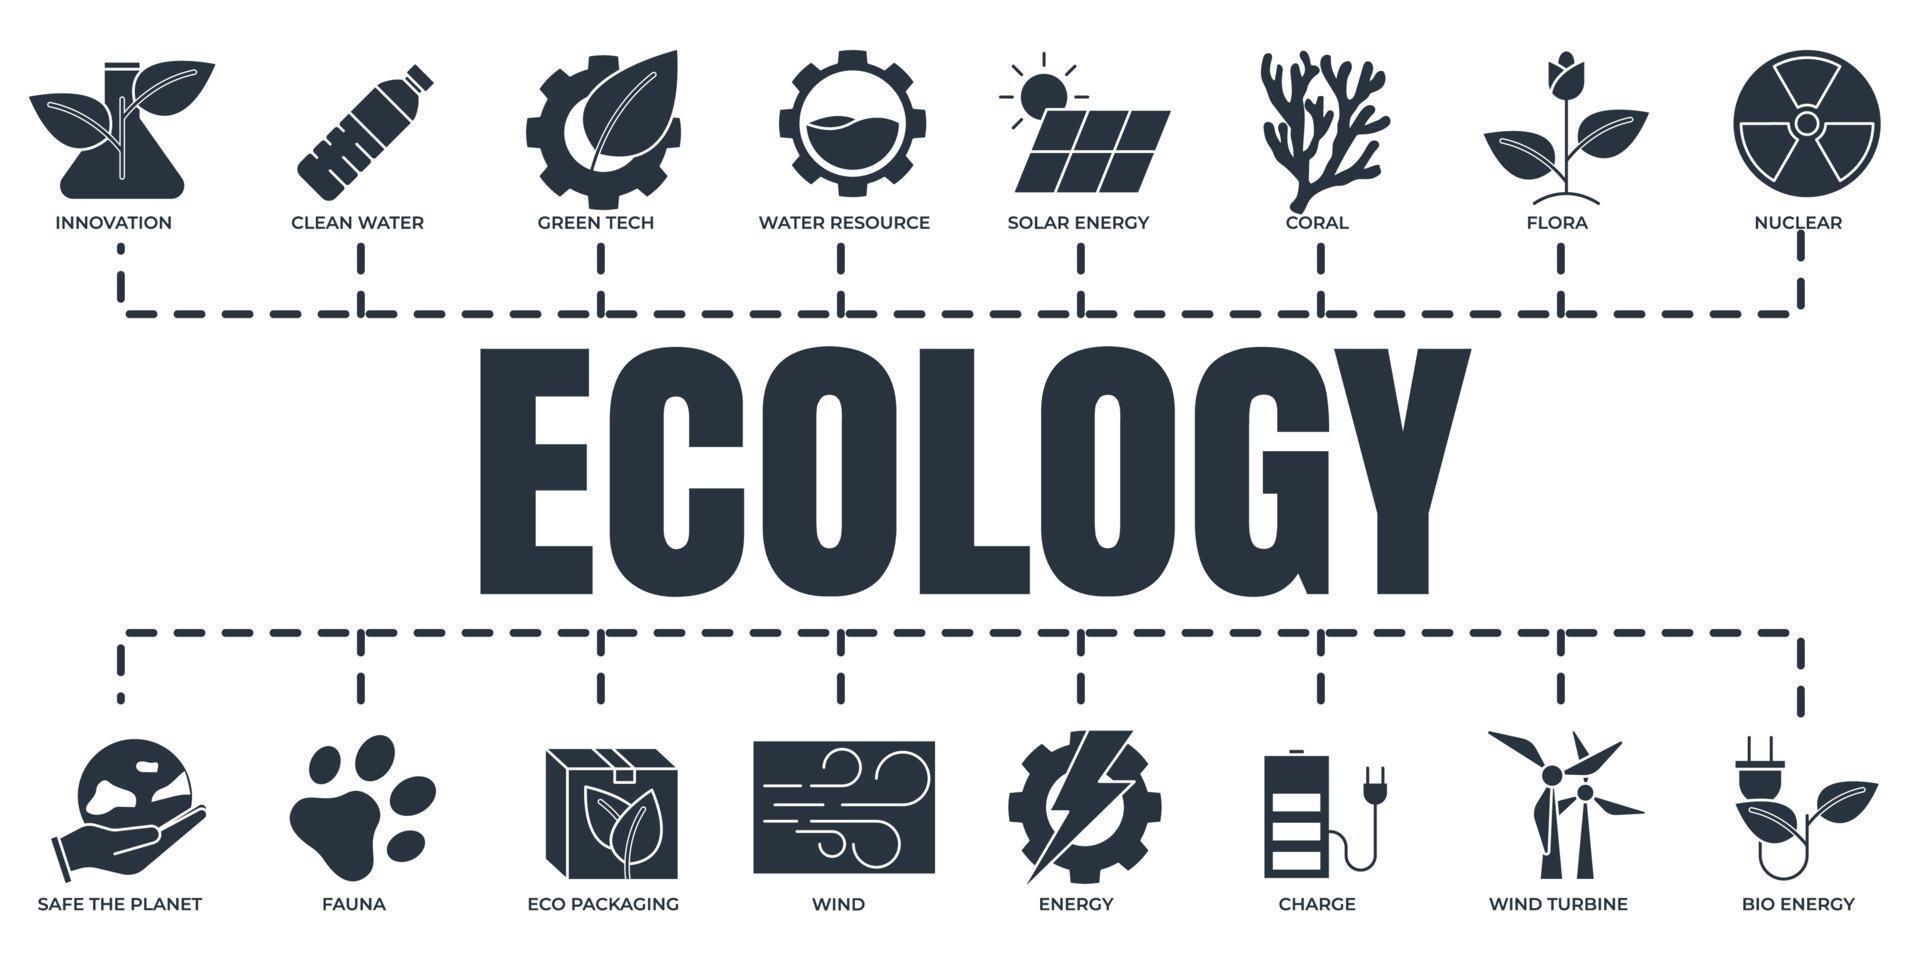 Respetuoso del medio ambiente. conjunto de iconos web de banner de ecología de sostenibilidad ambiental. energía solar, turbina eólica, nuclear y más concepto de ilustración vectorial. vector